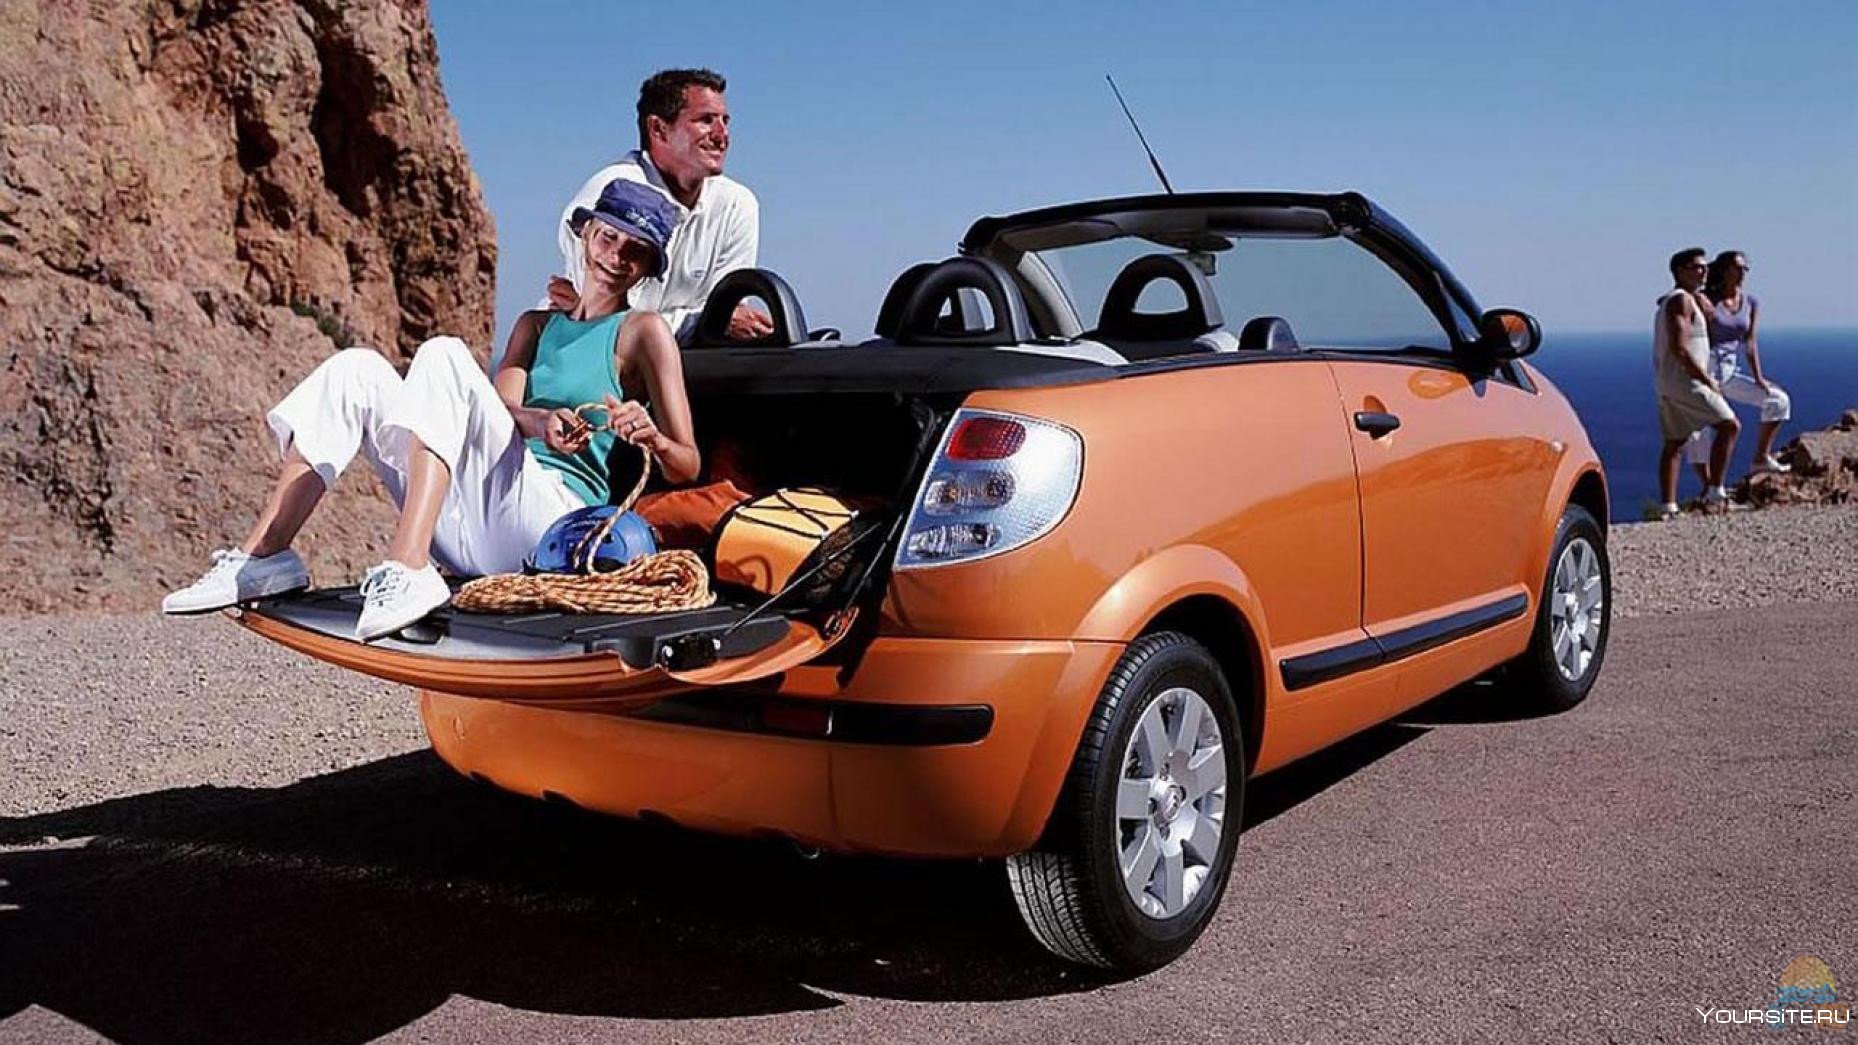 Аренда легковых машин. C3 Pluriel Mini Cooper. Путешествие на машине. Авто для путешествий. Автомобильный туризм.